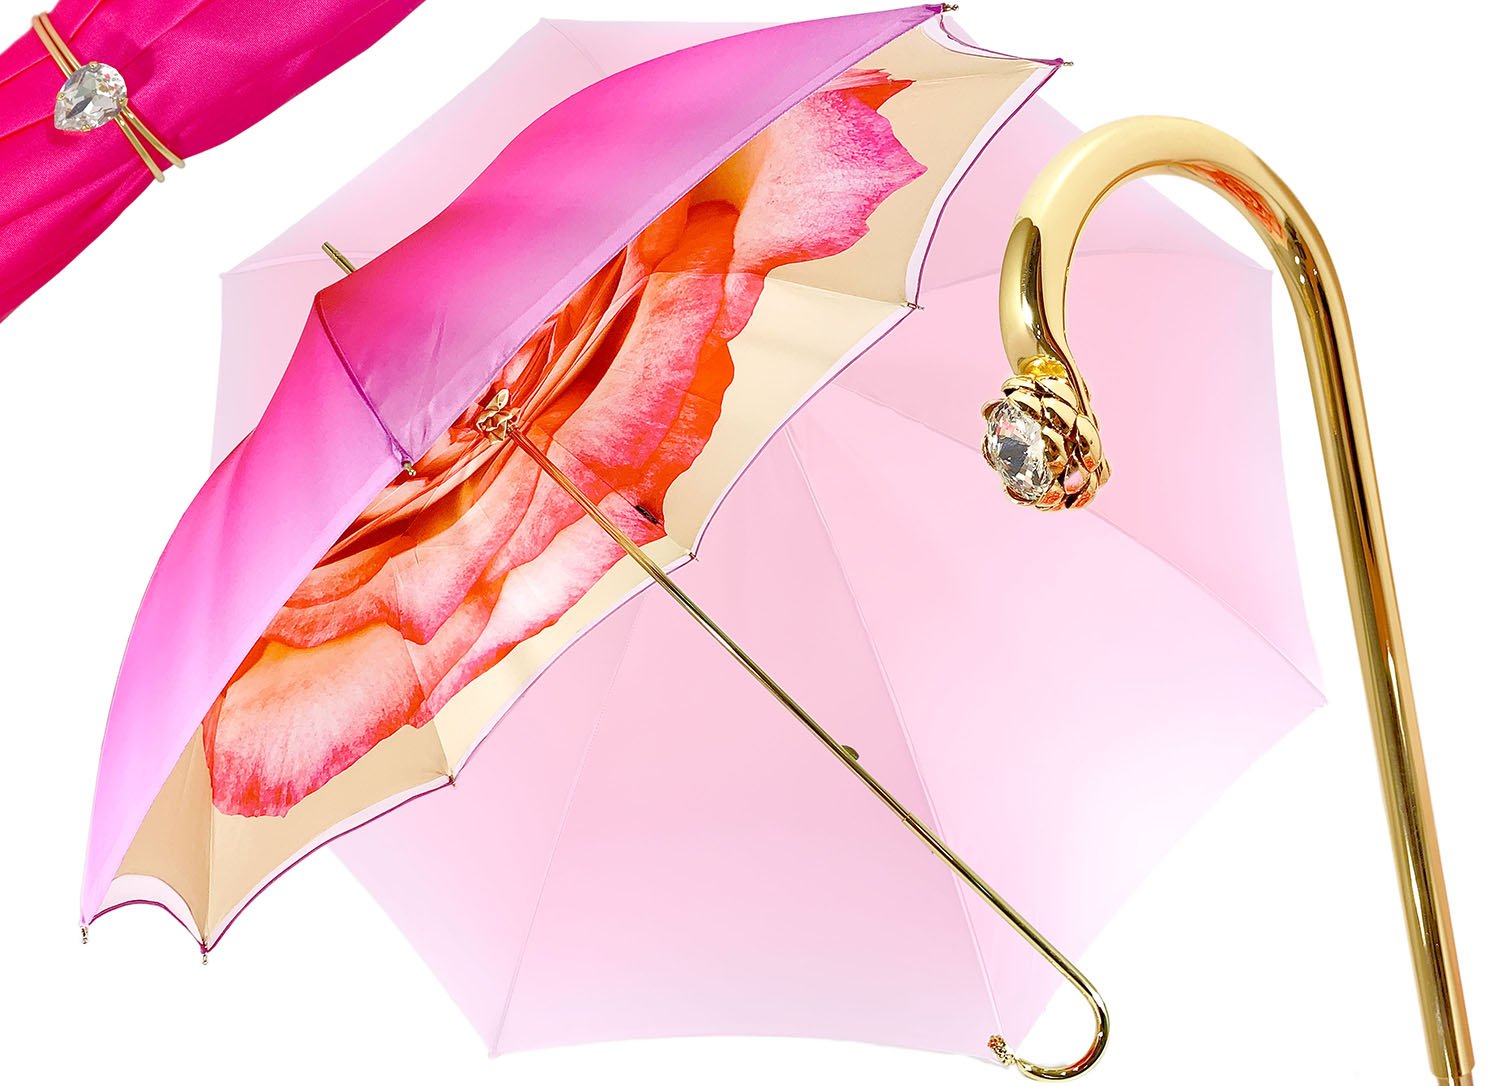 Pink Umbrella With Rose Design - il-marchesato